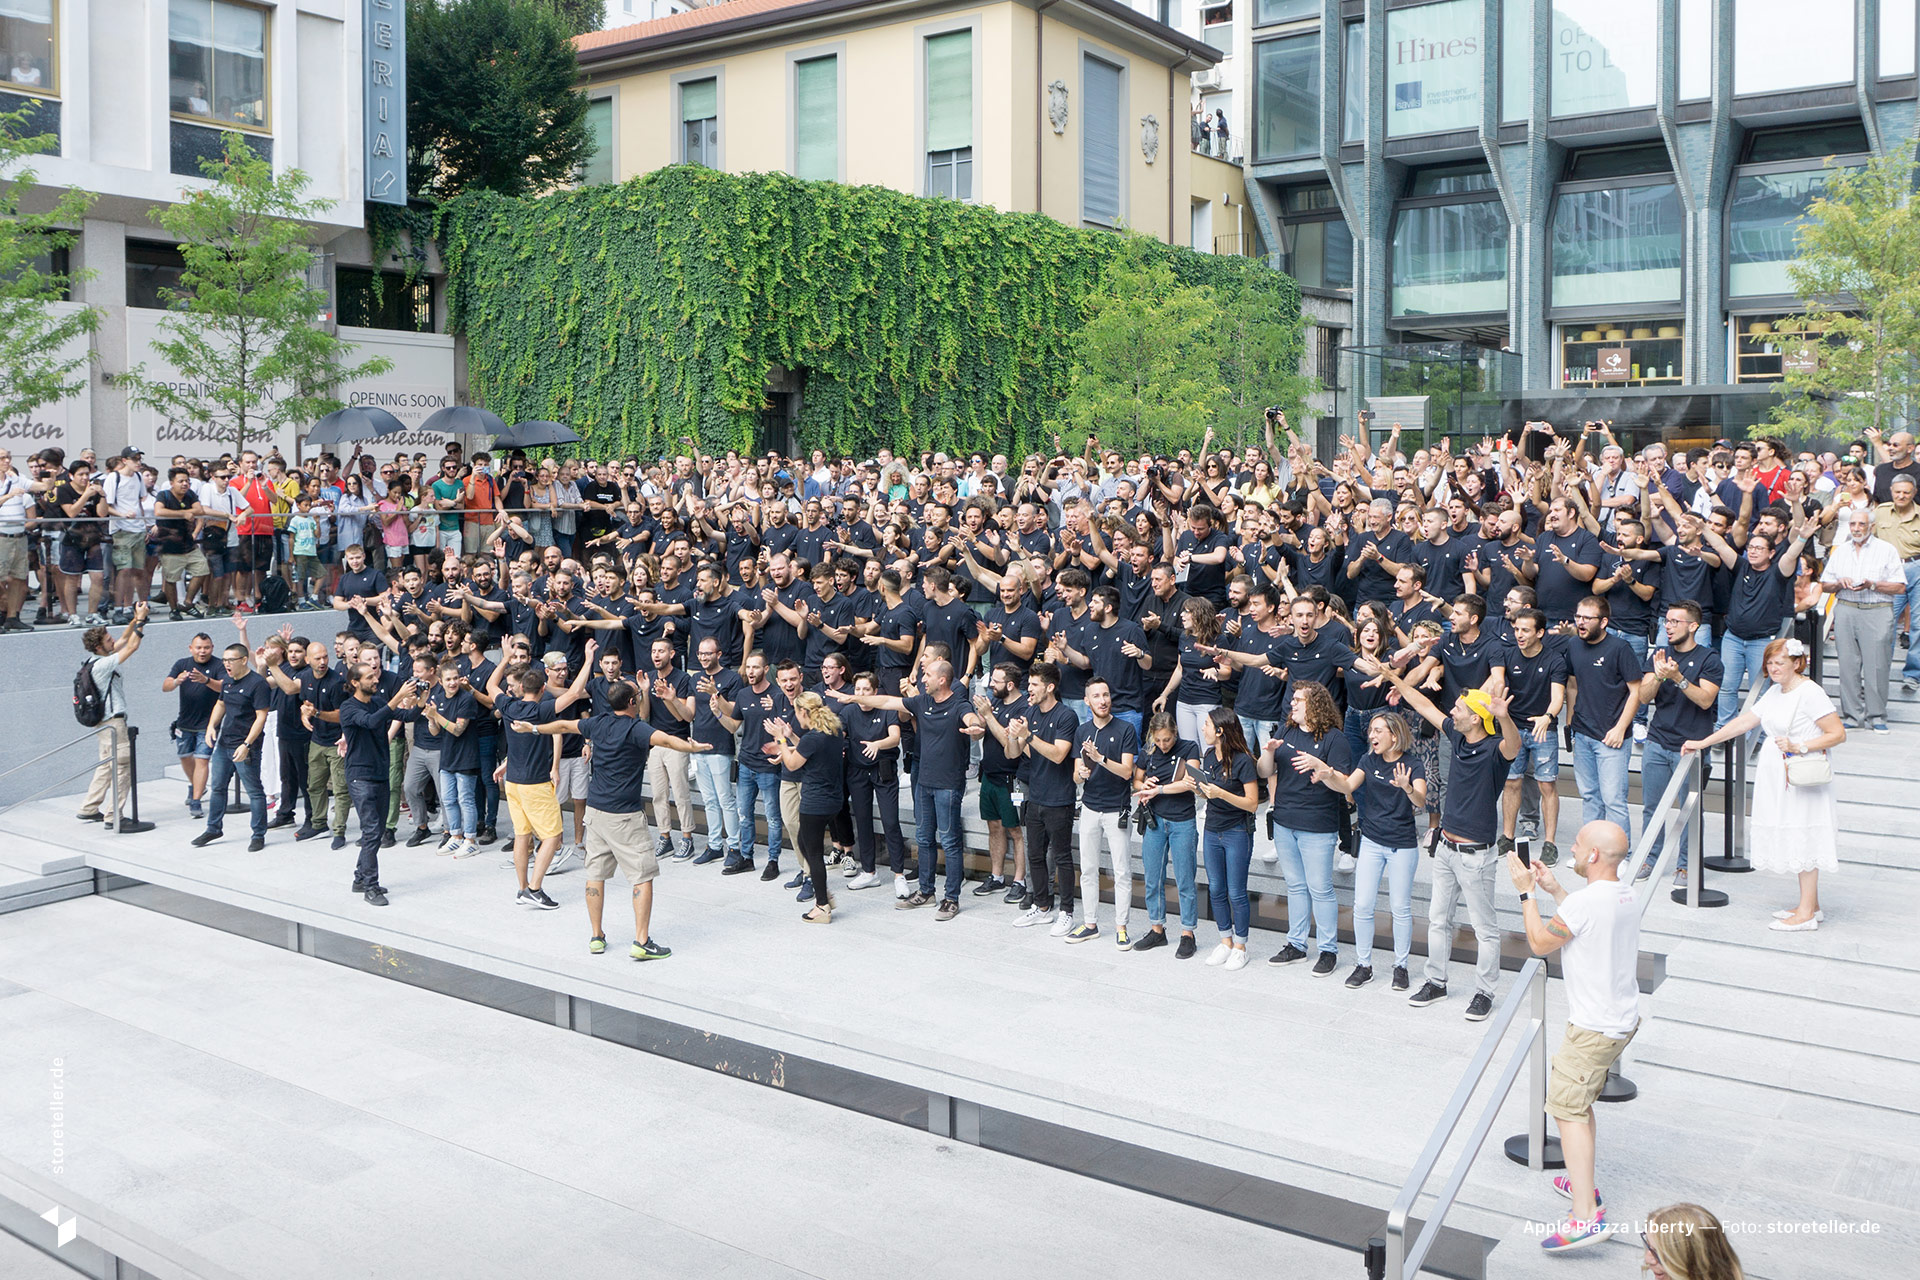 Die Eröffnung von Apple Piazza Liberty in Mailand